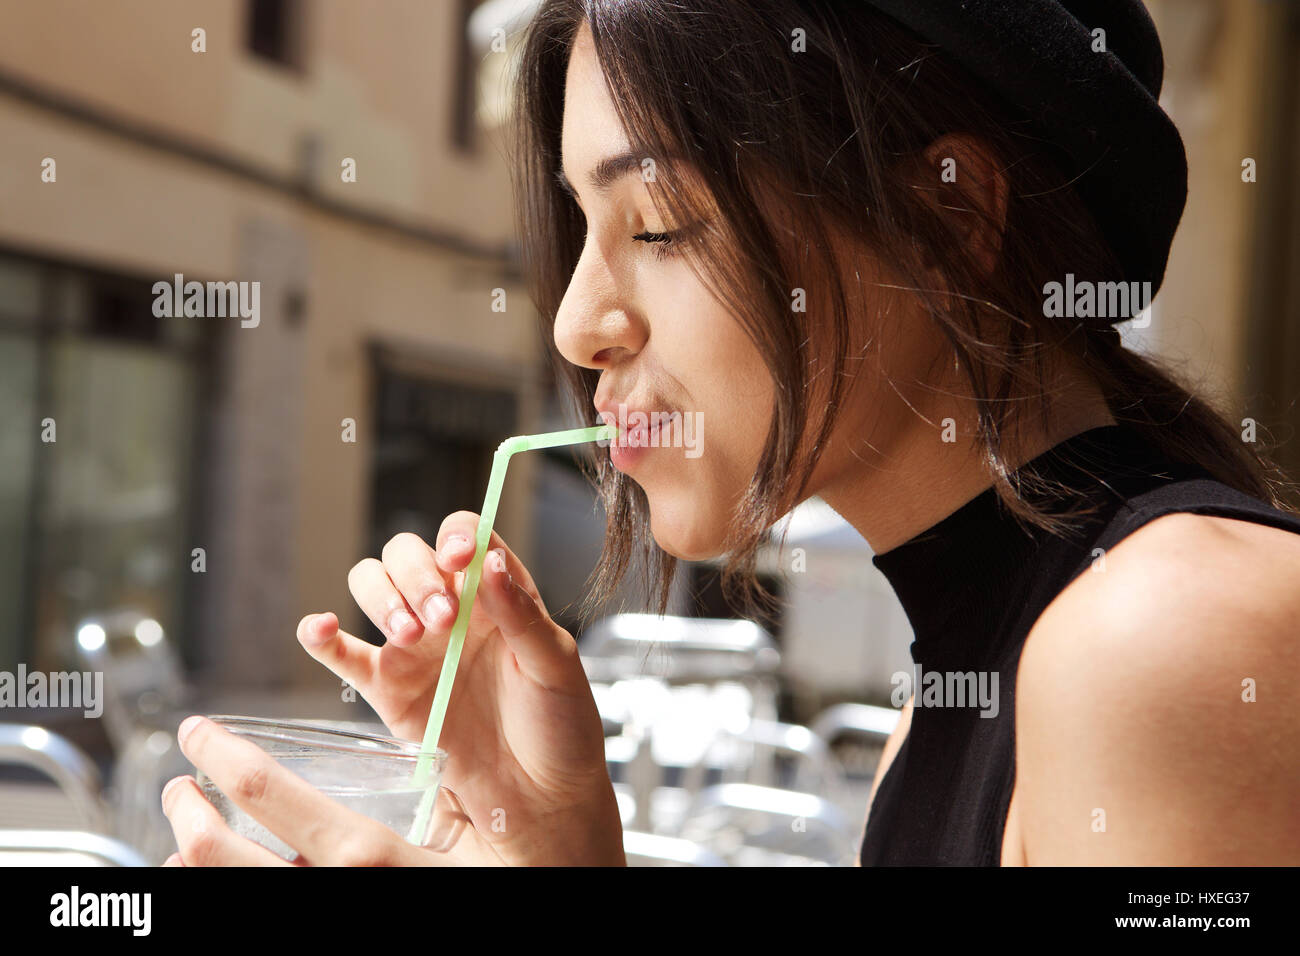 Côté Close up portrait of a young woman at outdoor cafe Banque D'Images